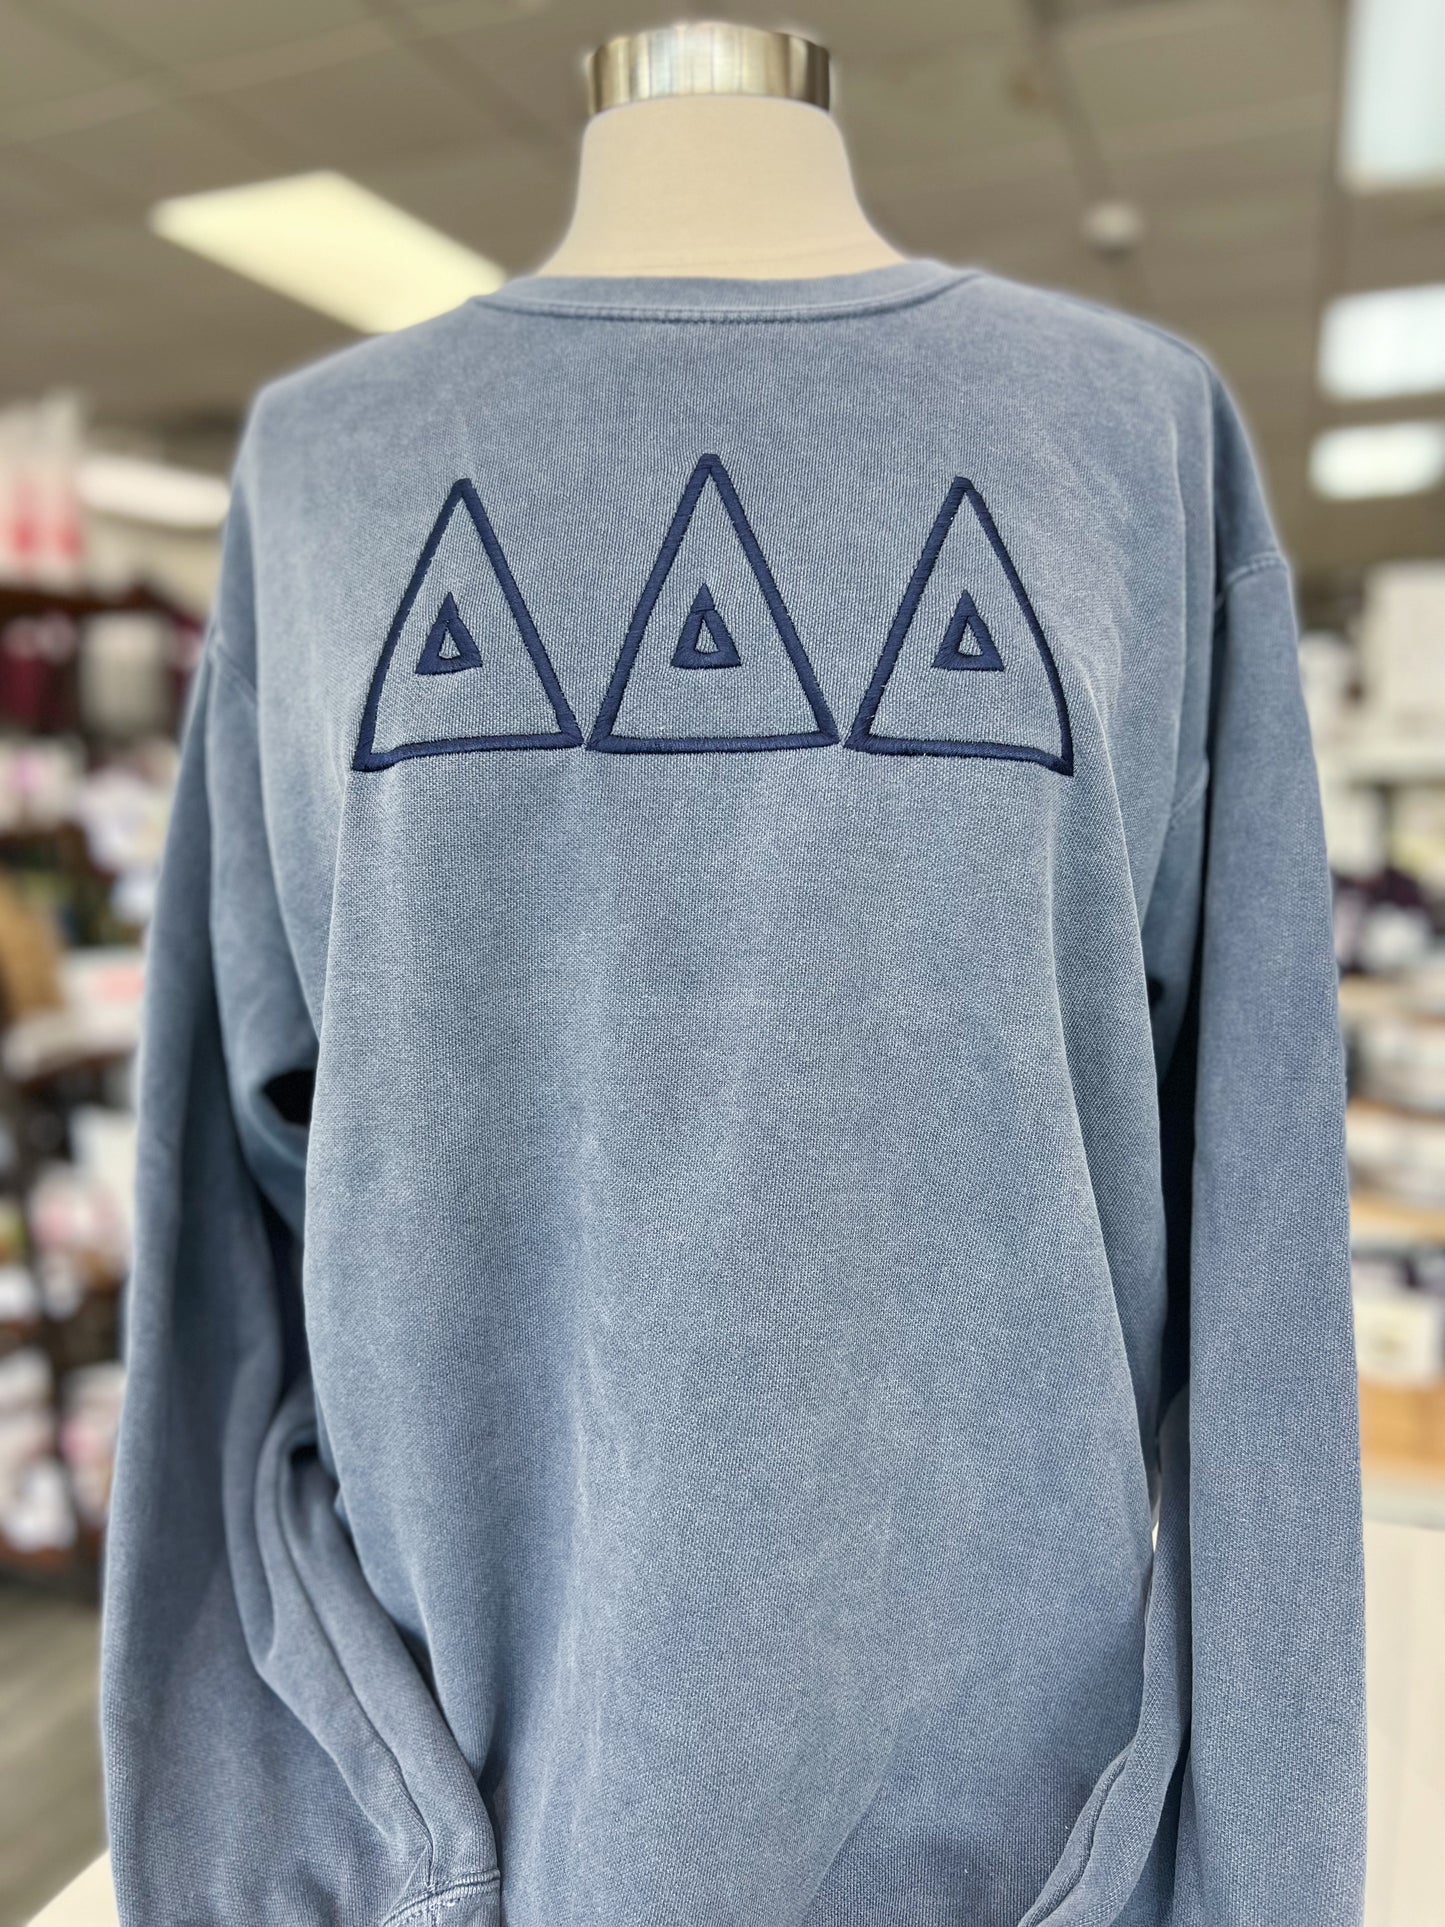 Tri Delta Monochrome Sweatshirt